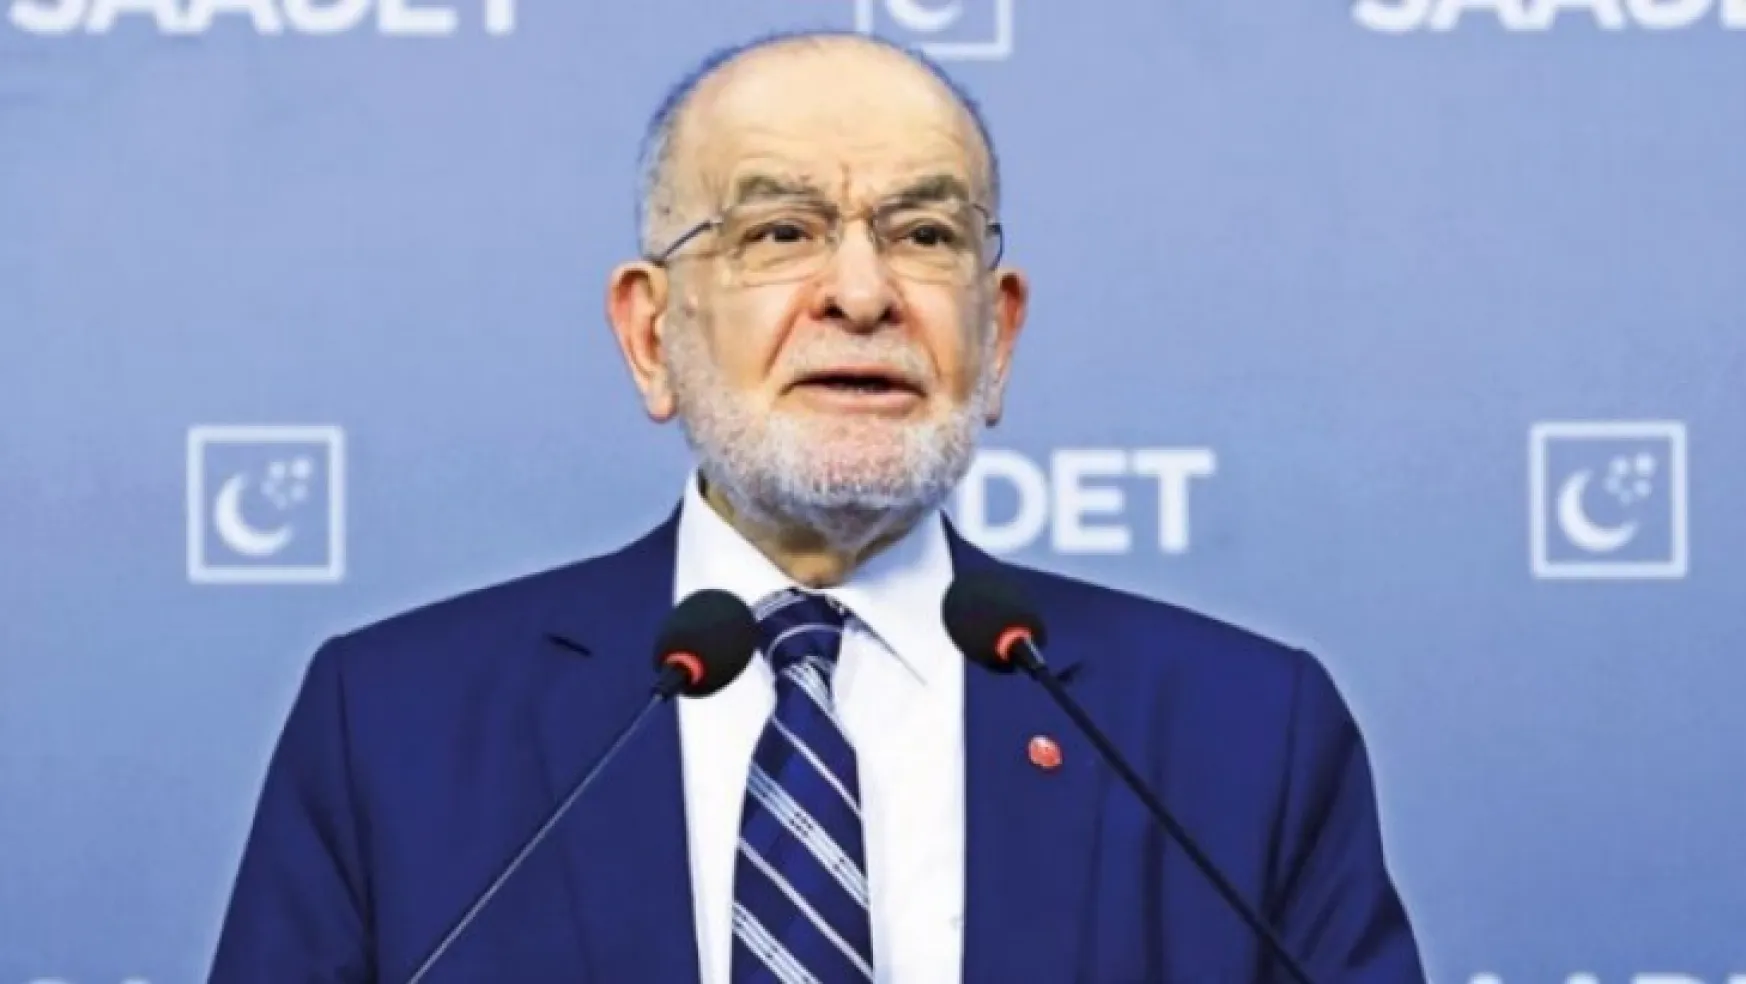 Karamollaoğlu: Partiyi genel başkan yönetir